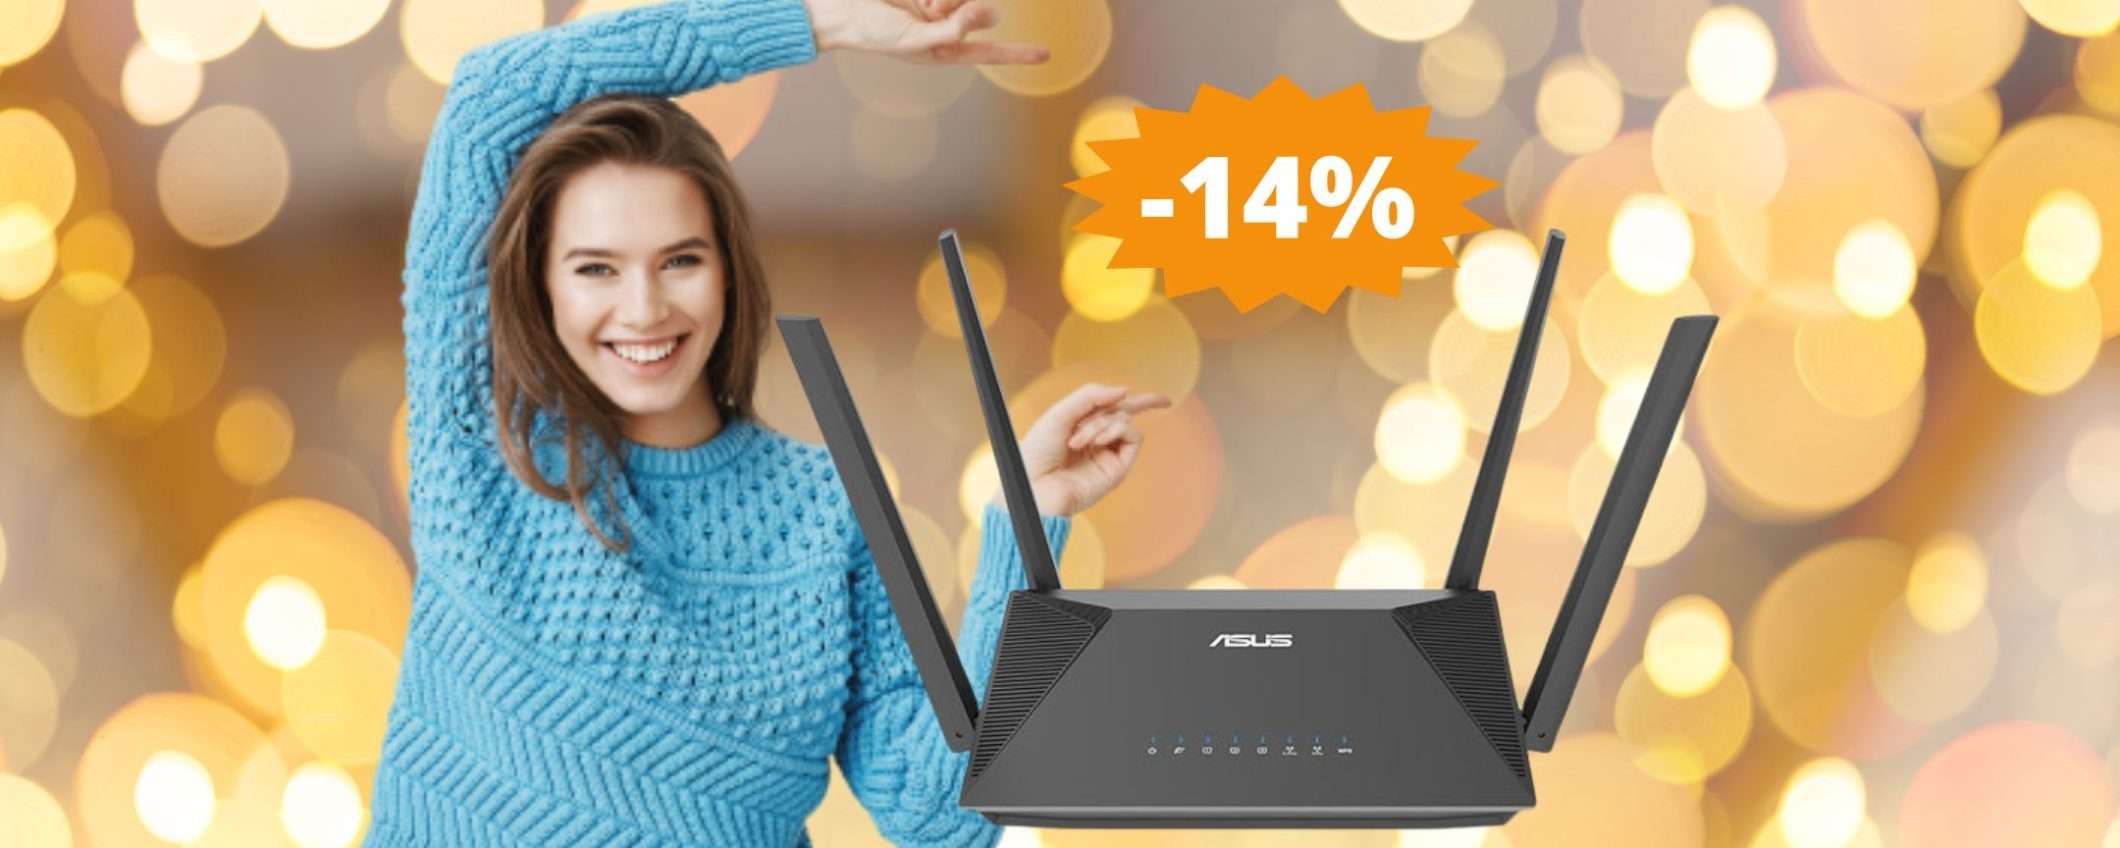 Router ASUS RT-AX52: OFFERTA a tempo limitato su Amazon (-14%)